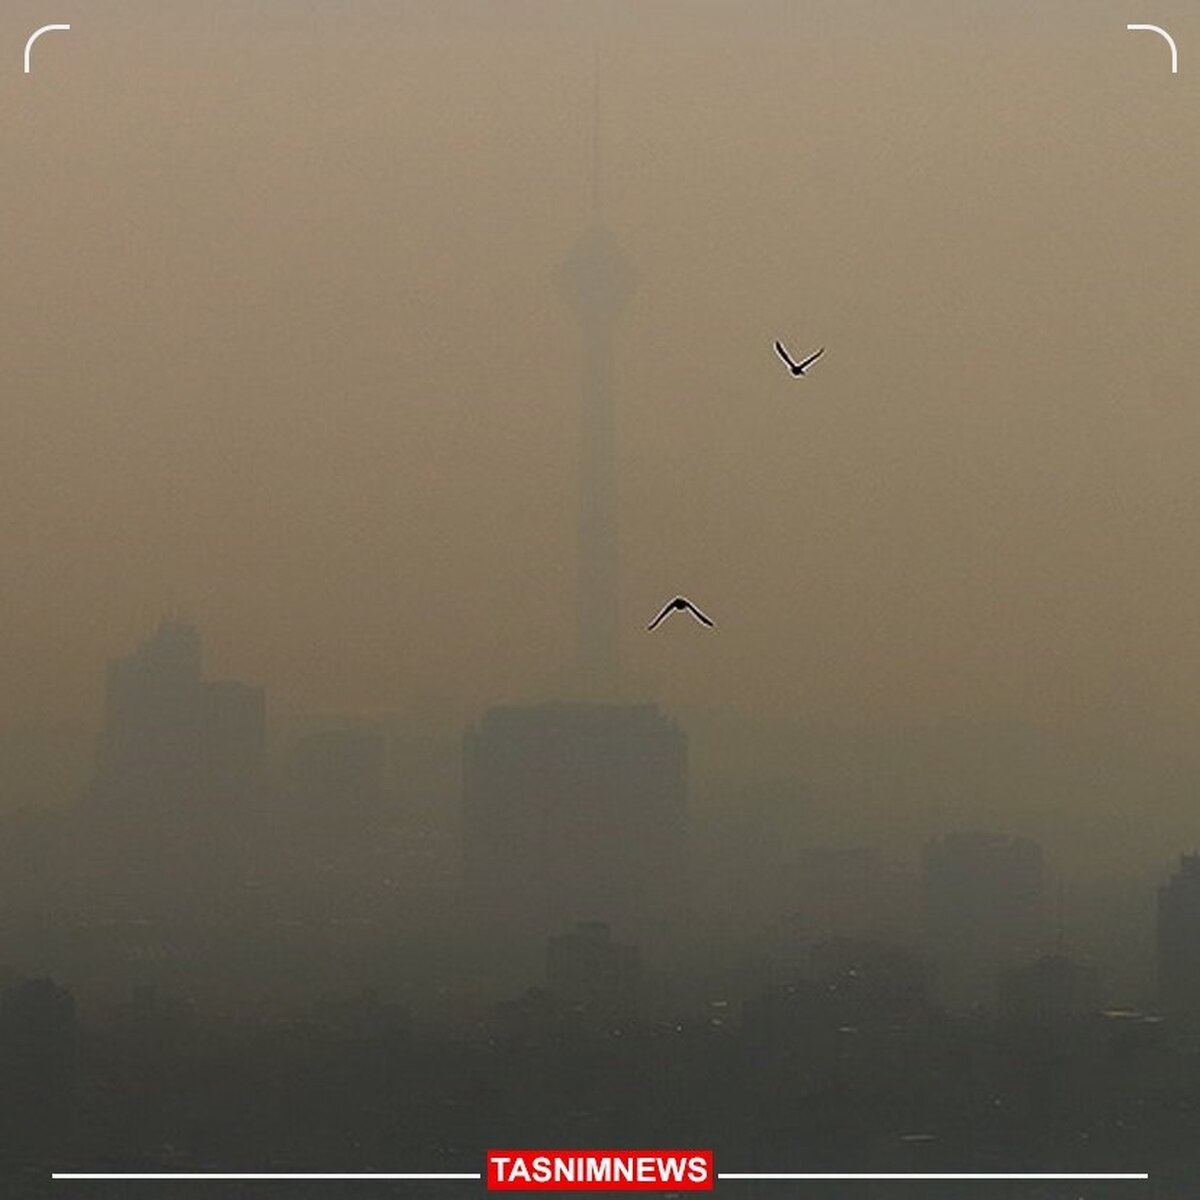 افزایش آلودگی هوا تهران طی هفته آینده